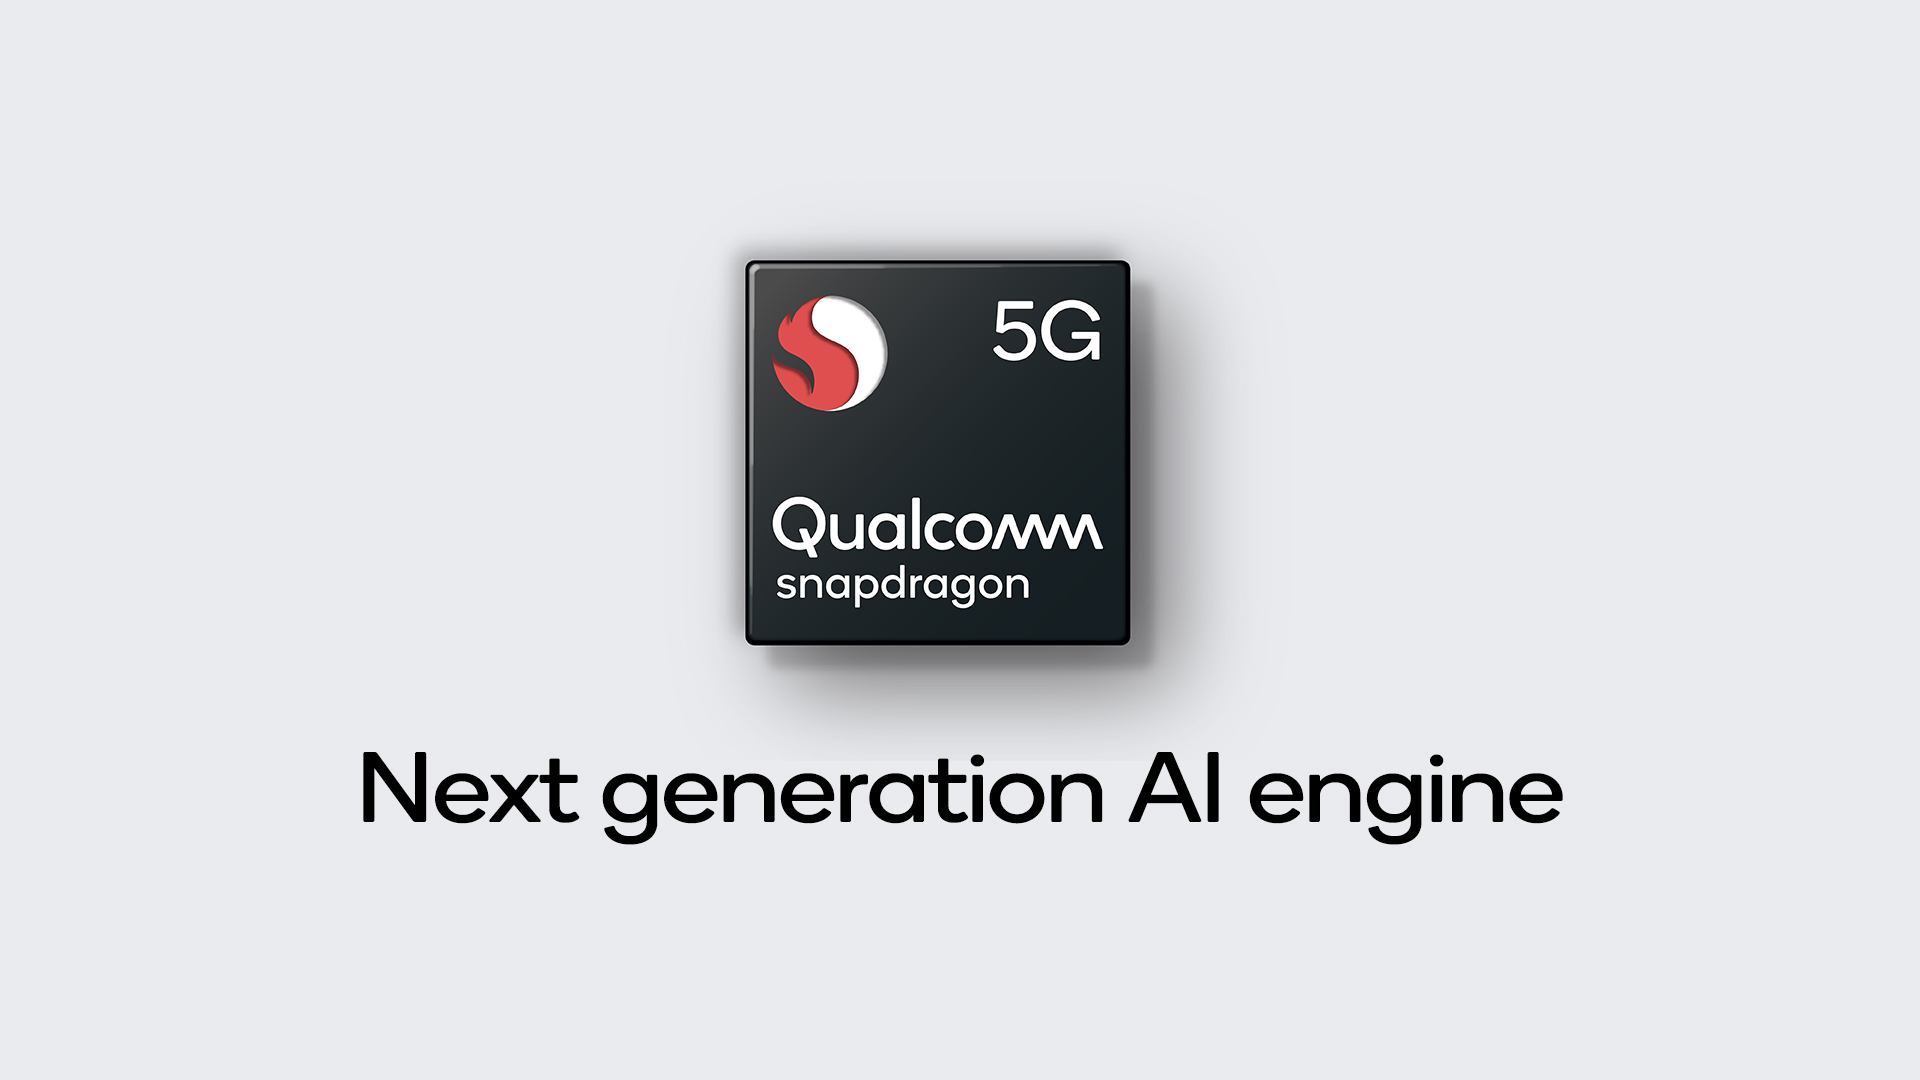 [IFA 2019] Qualcomm đẩy nhanh thương mại hóa 5G trên toàn cầu với nhiều dòng sản phẩm nền tảng Snapdragon 5G Platforms